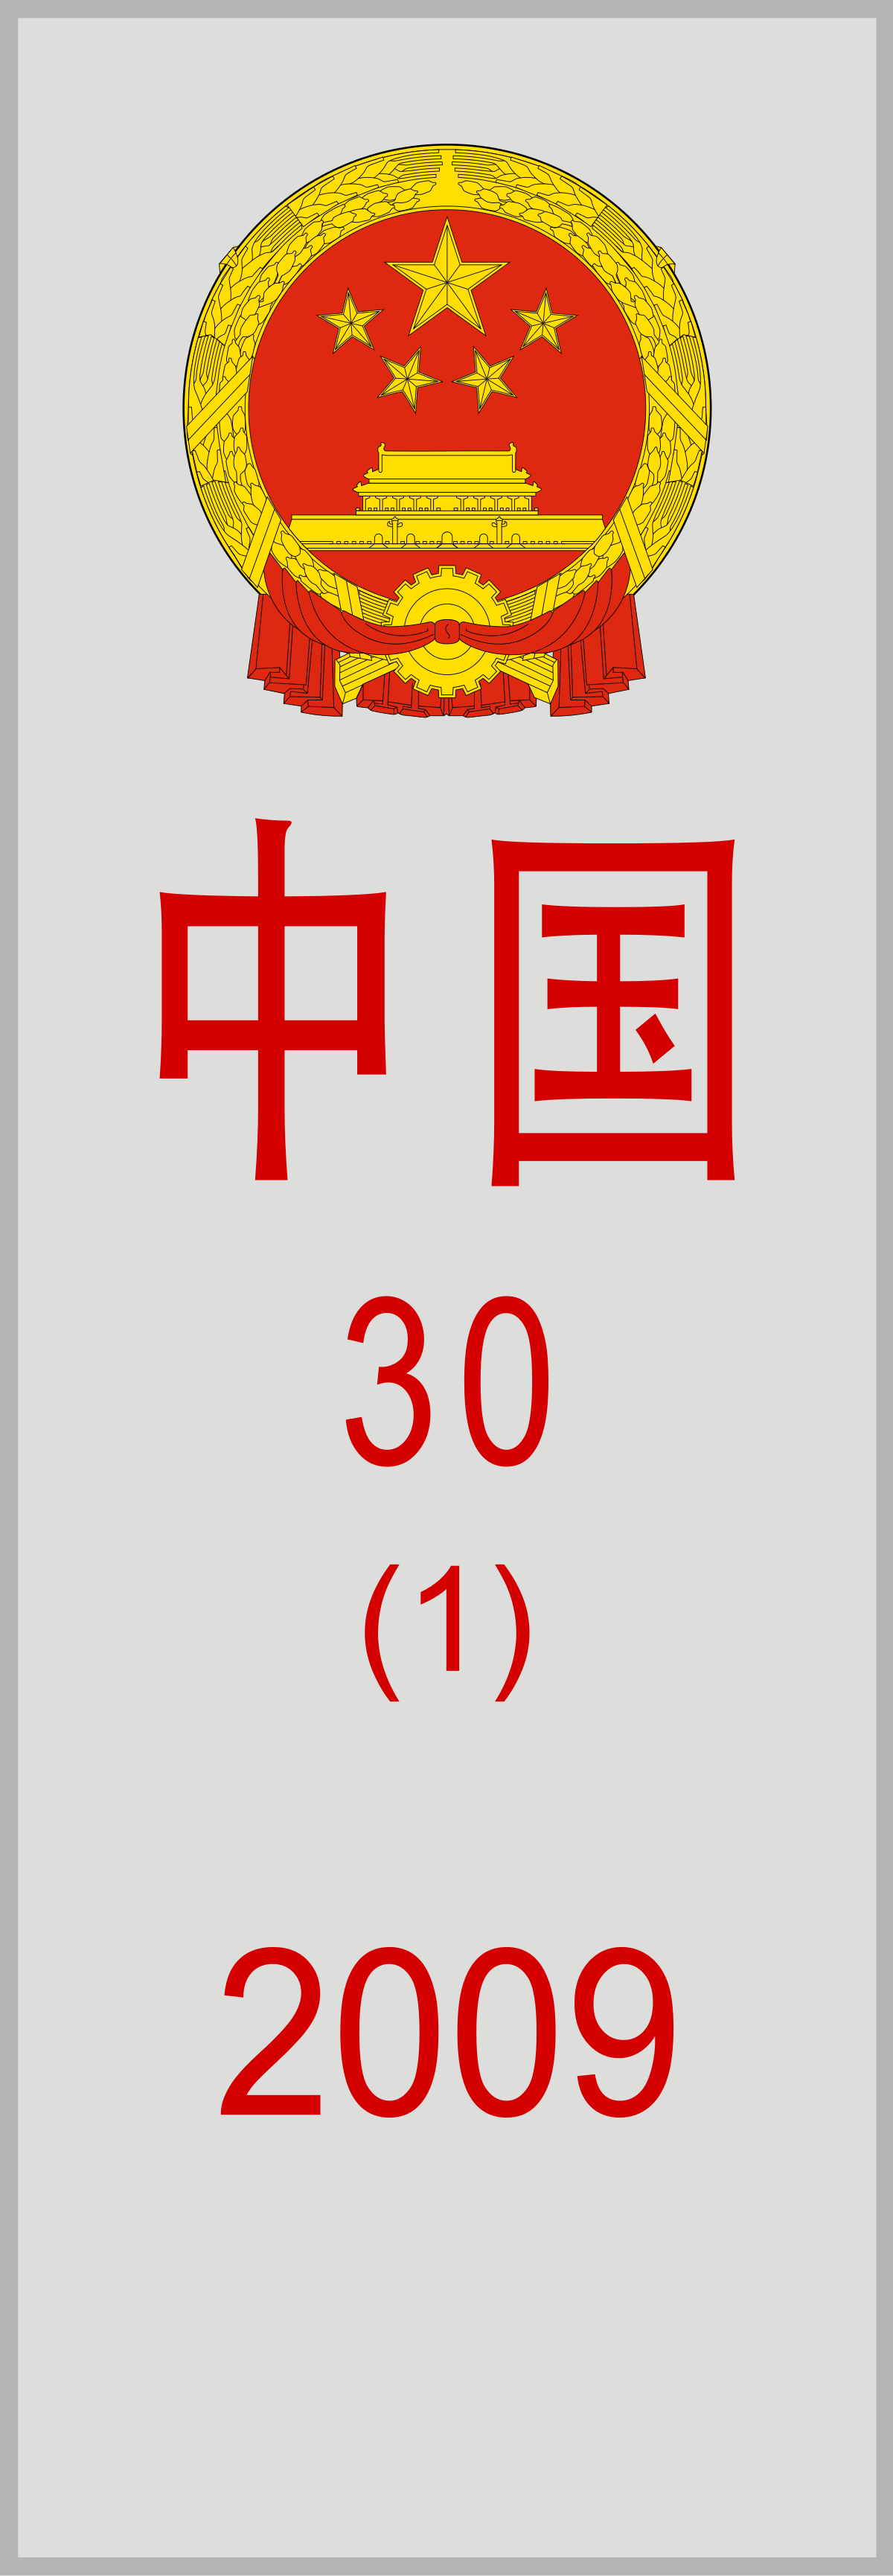 File:Boundary marker of China.svg - Wikipedia